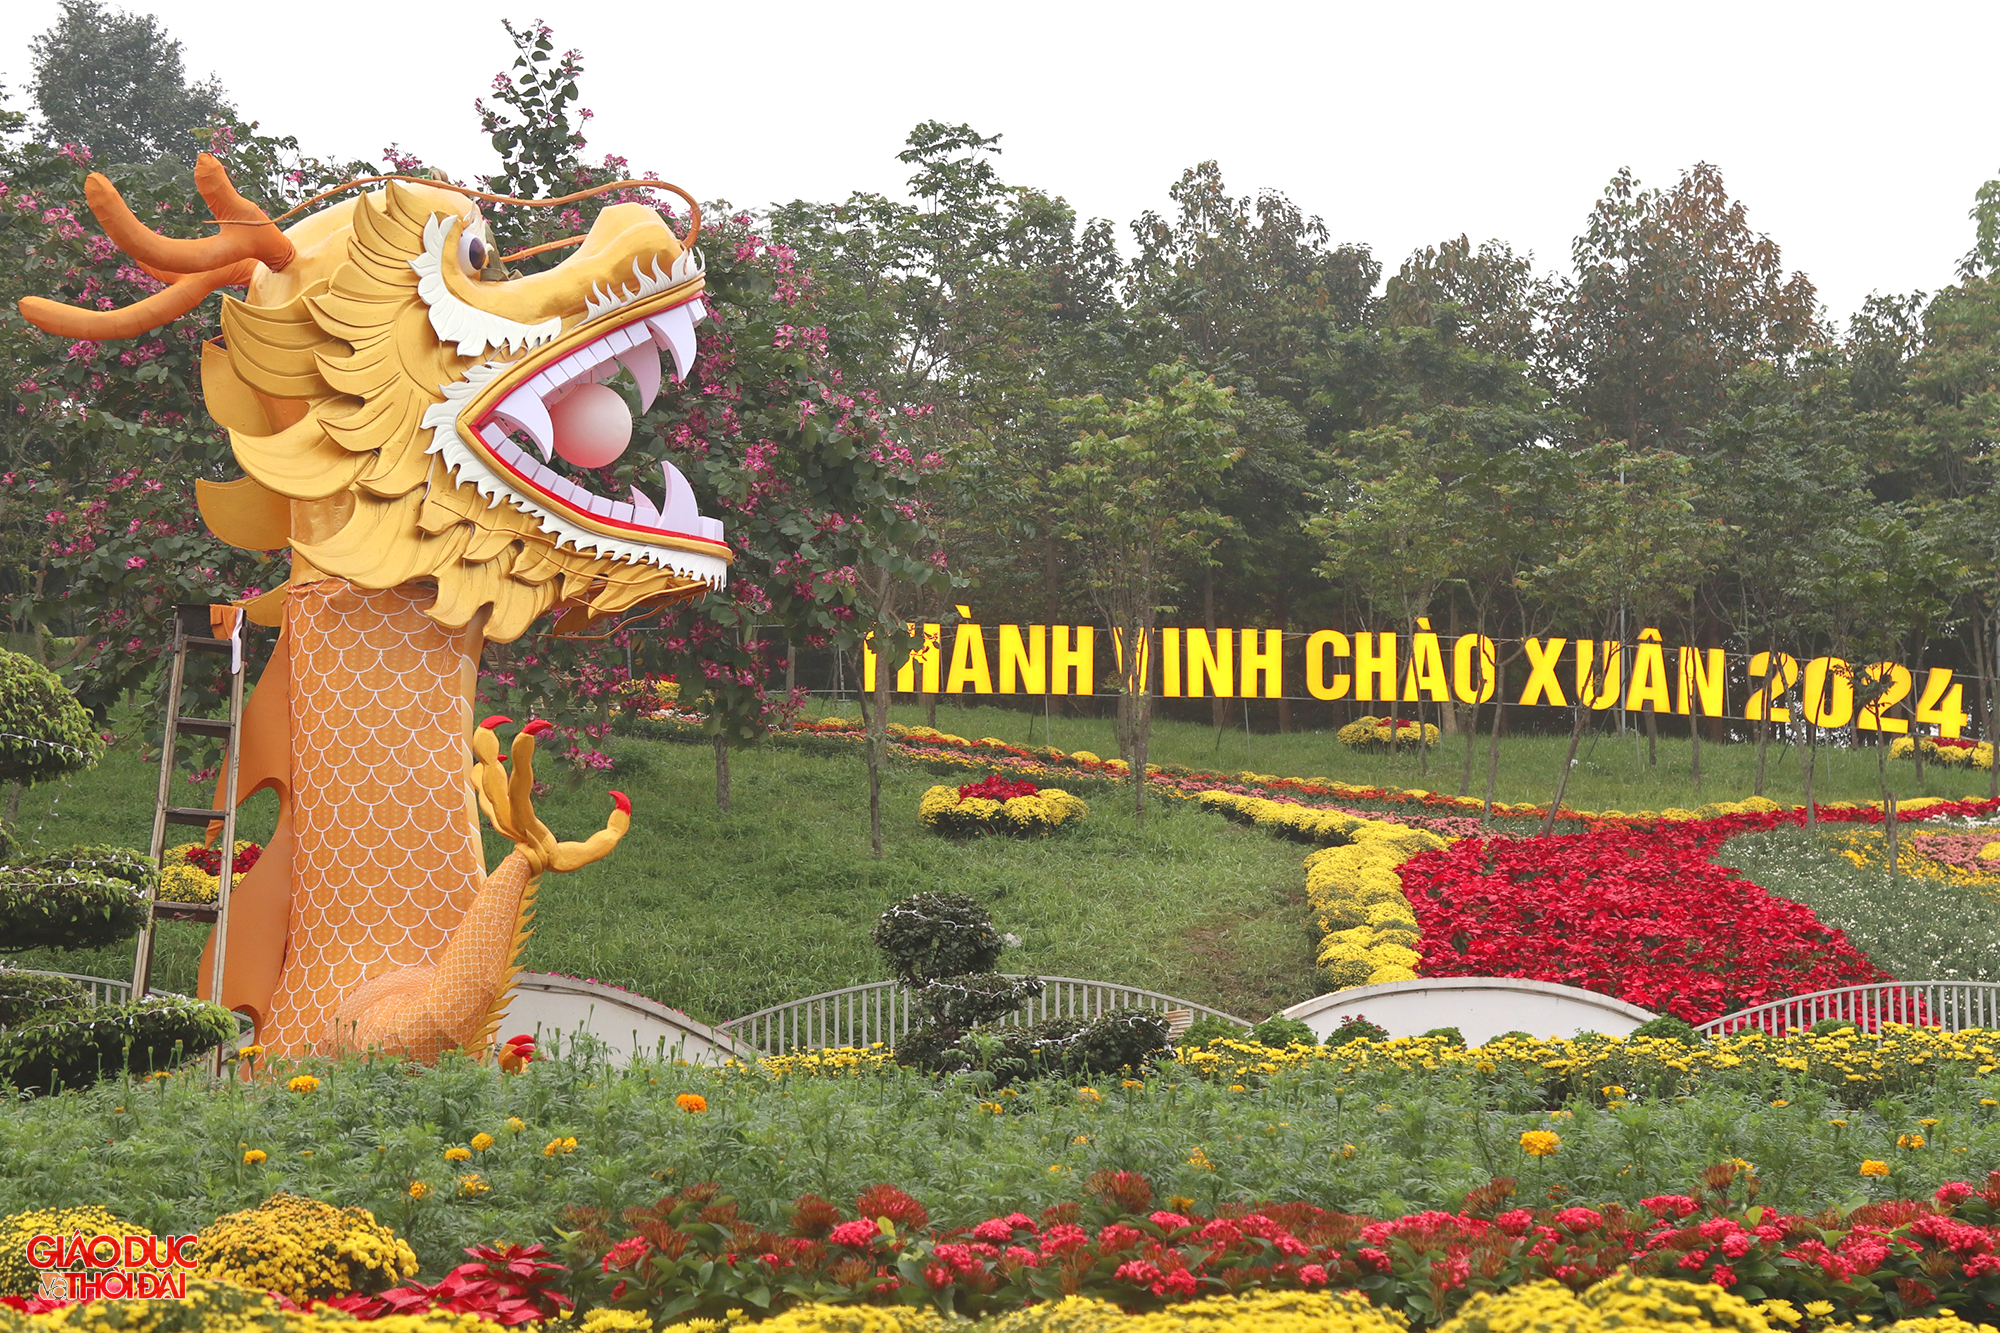 Linh vật rồng dài 30m, cao 5m đặt Quảng trường Hồ Chí Minh (tại TP Vinh, Nghệ An).